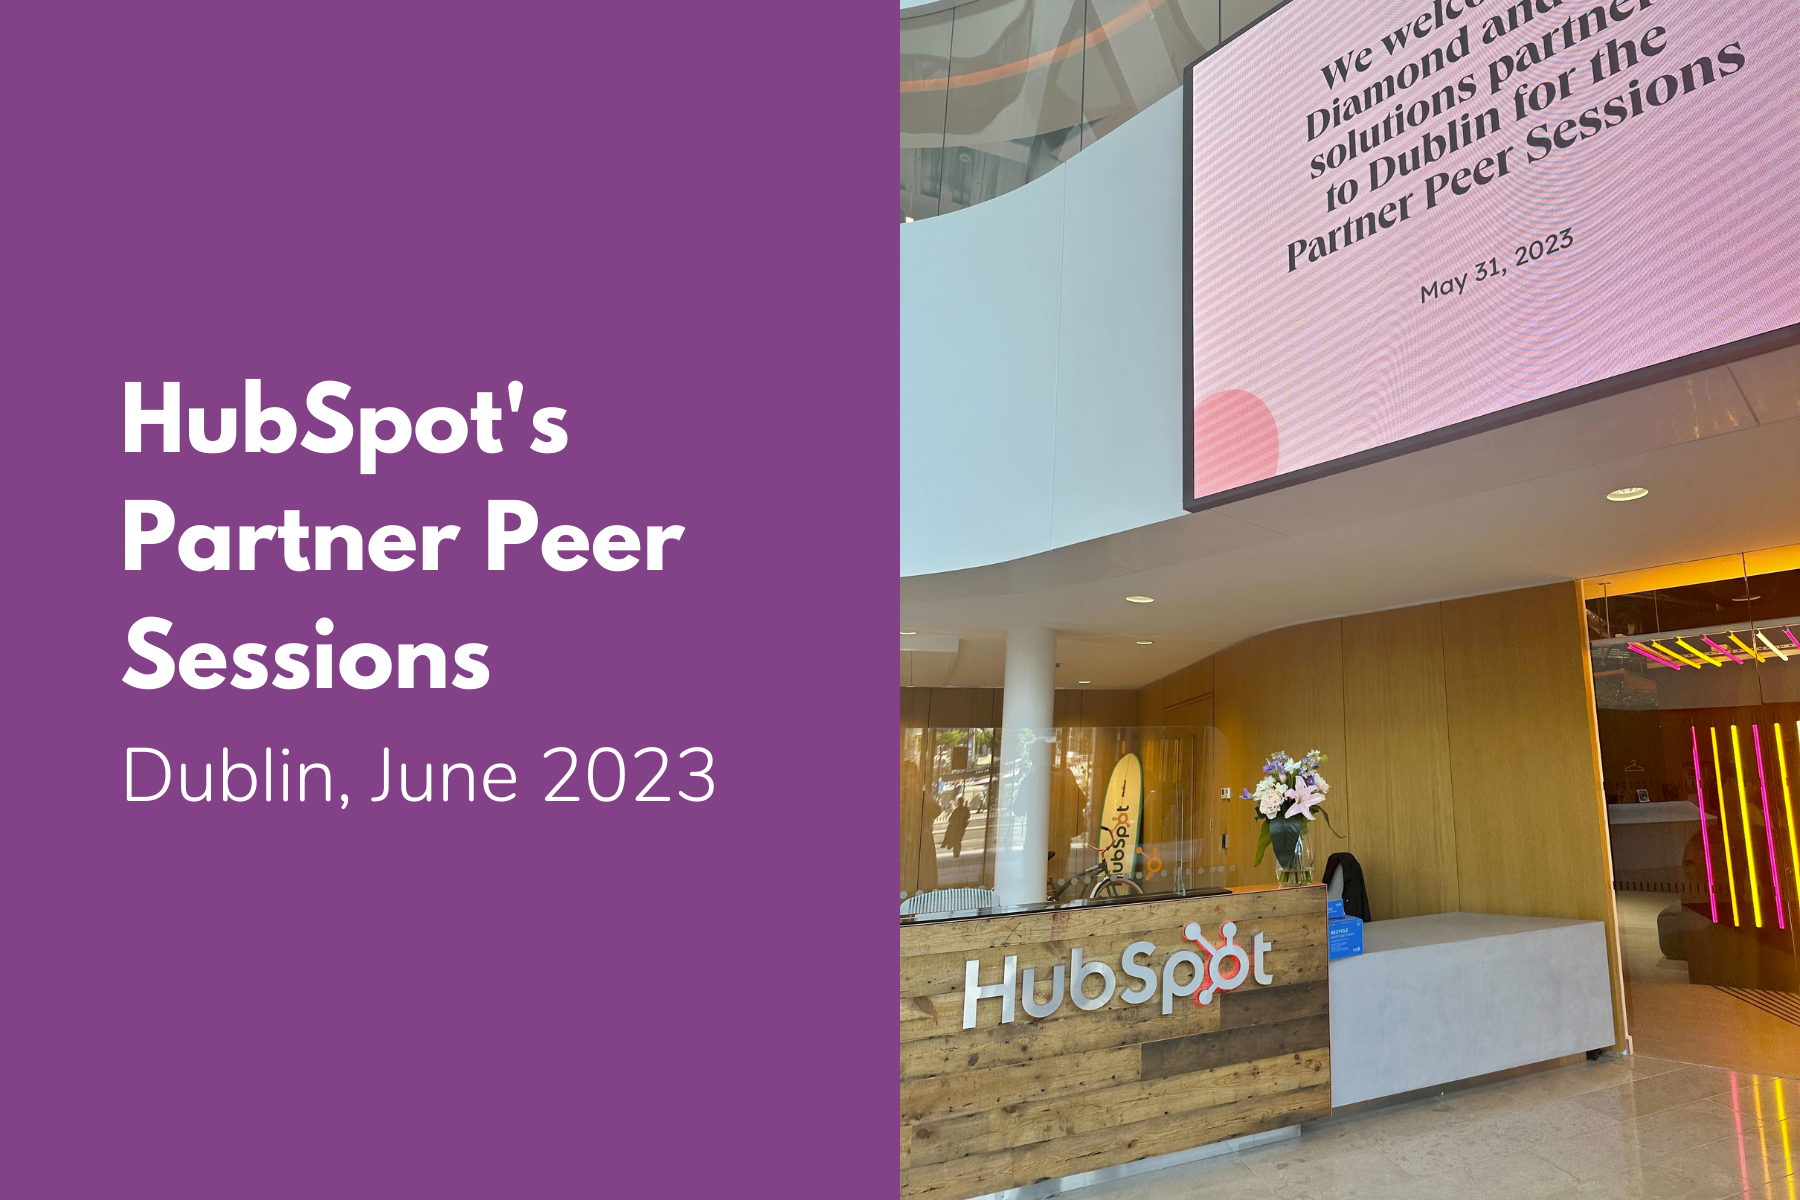 HubSpot's Partner Peer Sessions